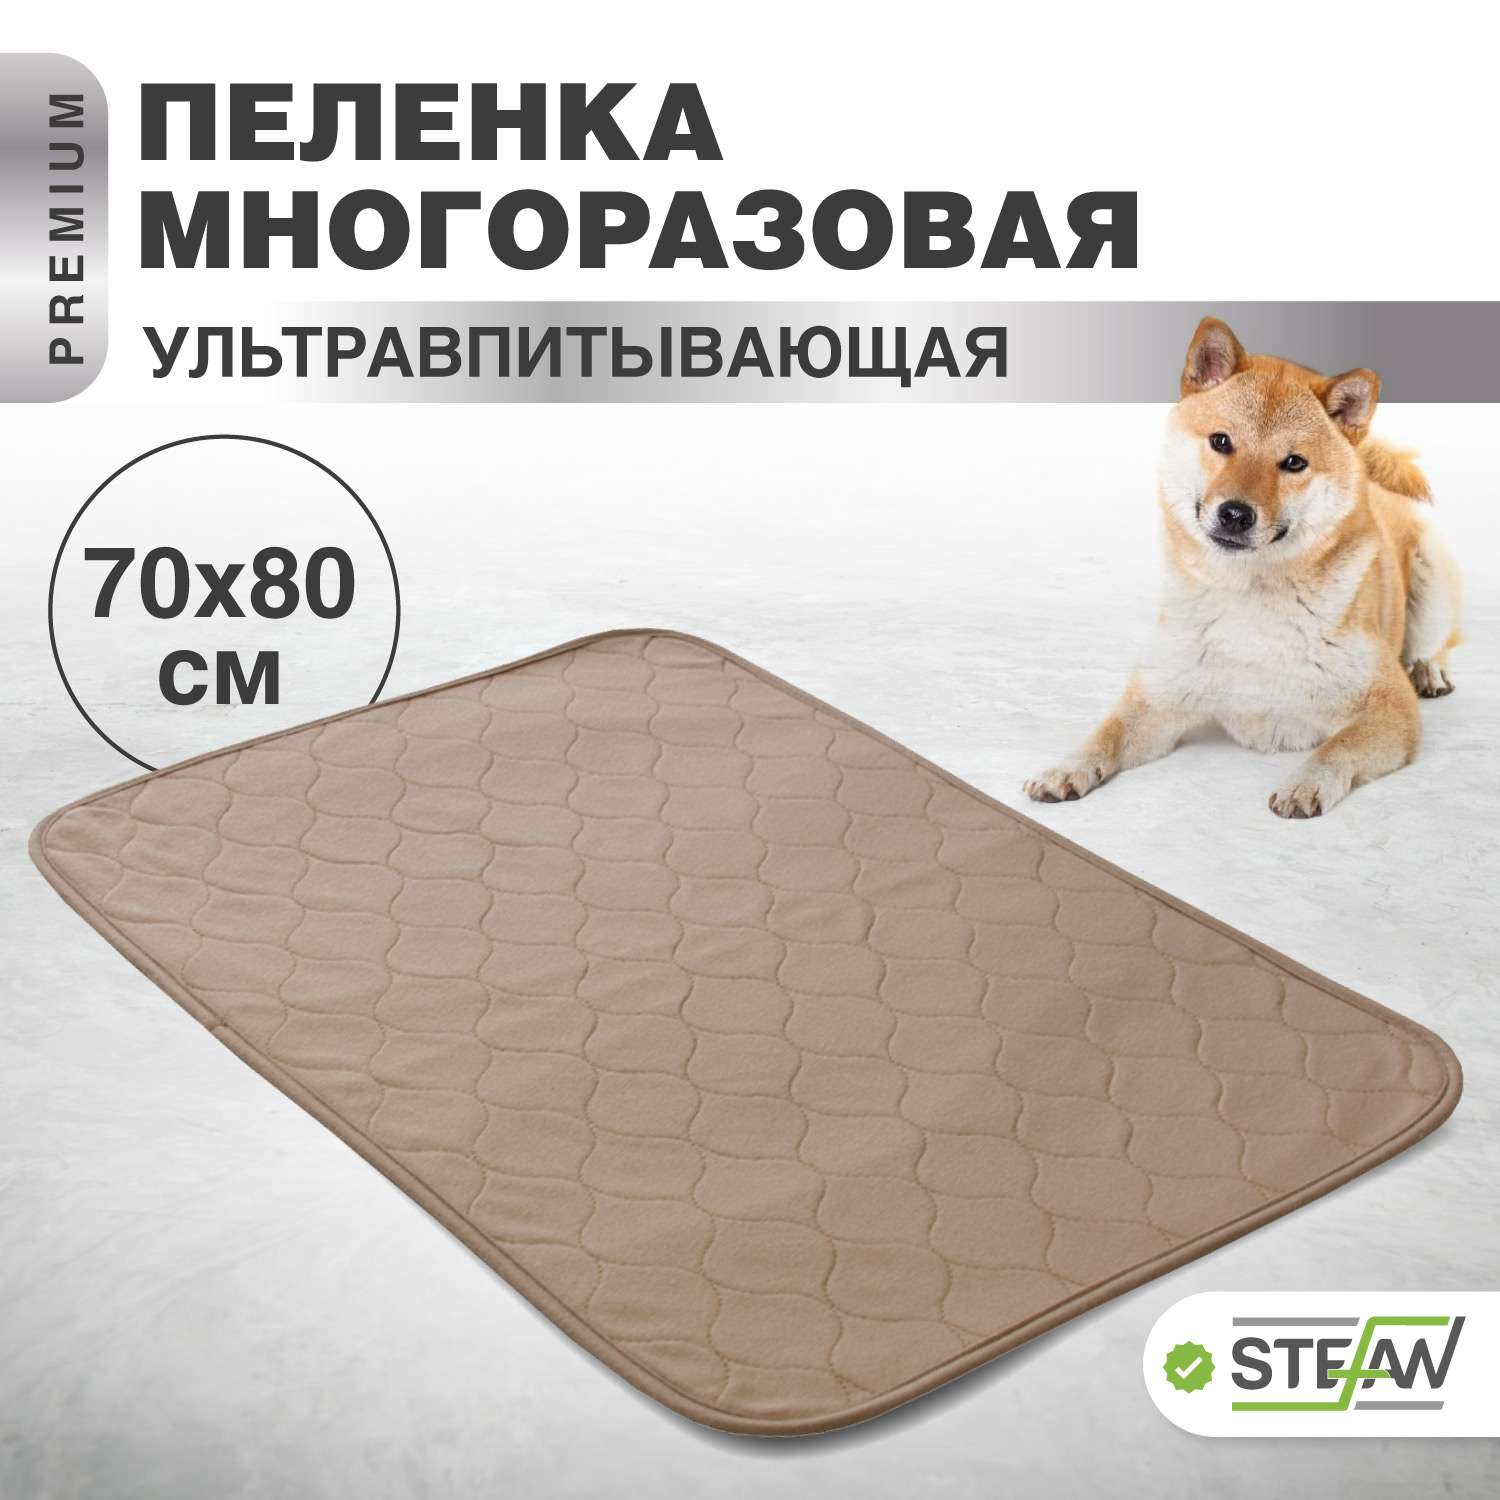 Пеленка для животных Stefan впитывающая многоразовая коричневая однотонная 70х80 см - фото 1